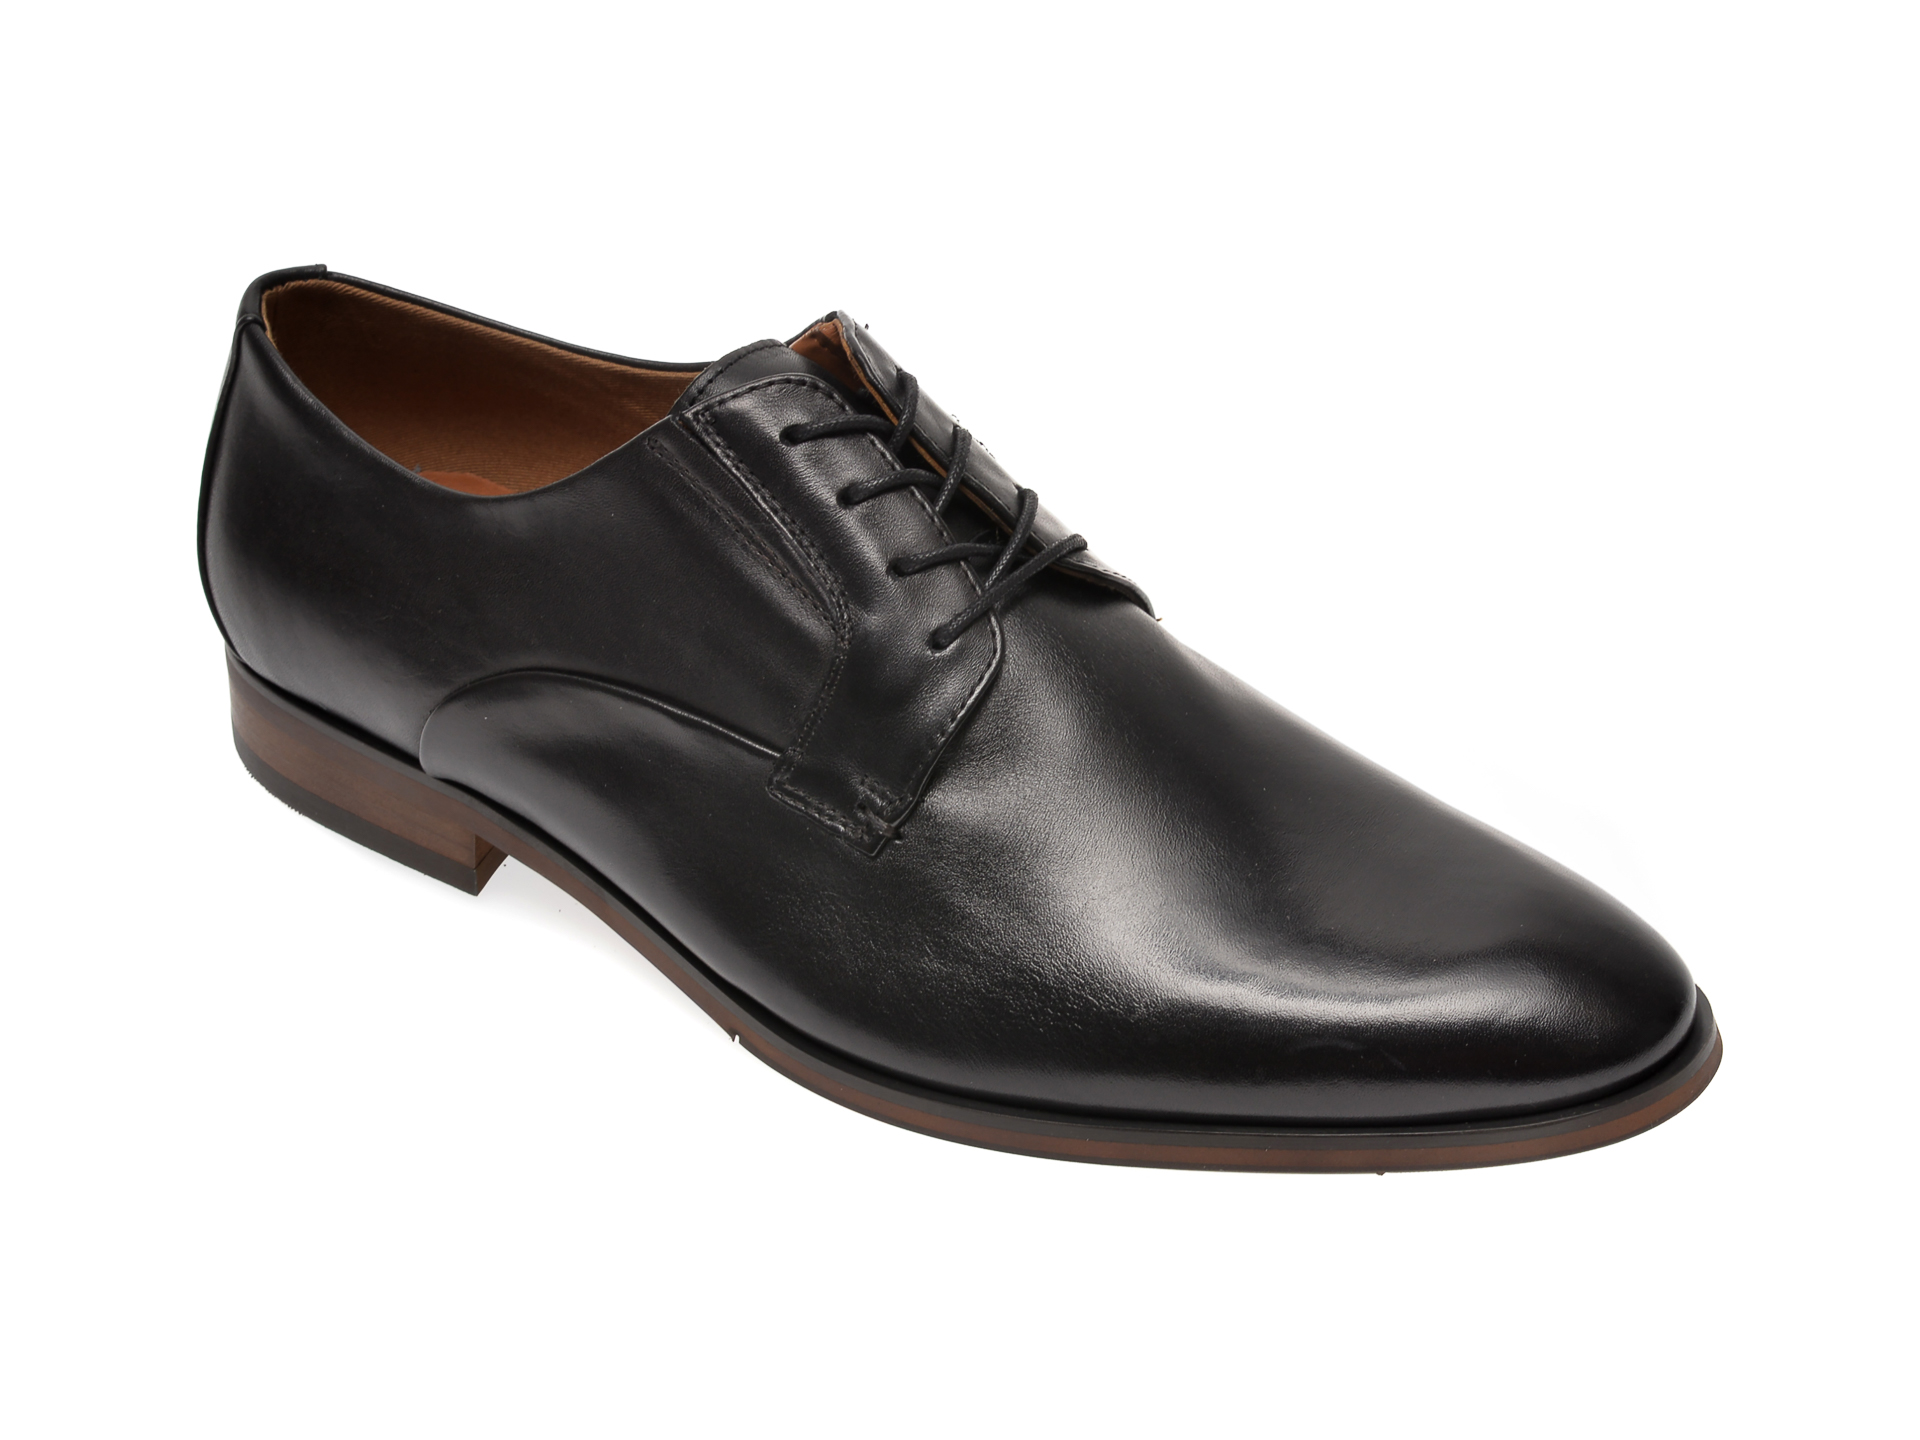 Pantofi ALDO negri, Eowelalian001, din piele naturala imagine Black Friday 2021